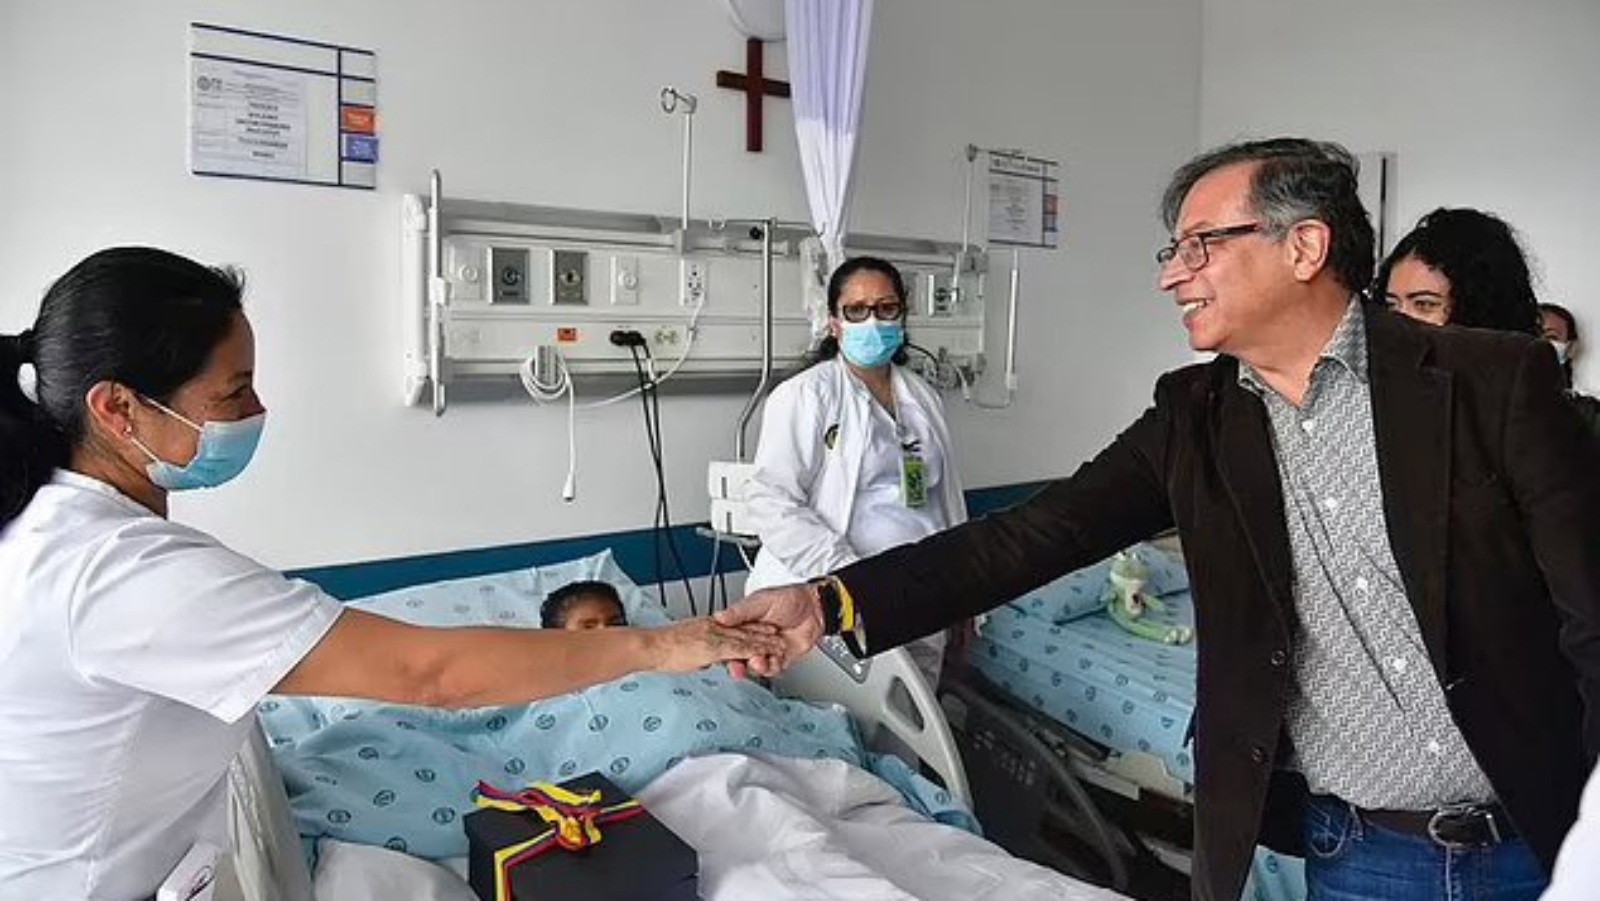 الرئيس الكولومبي غوستافو بيترو في زيارة للأطفال الأربعة أثناء تواجدهم في المستشفى